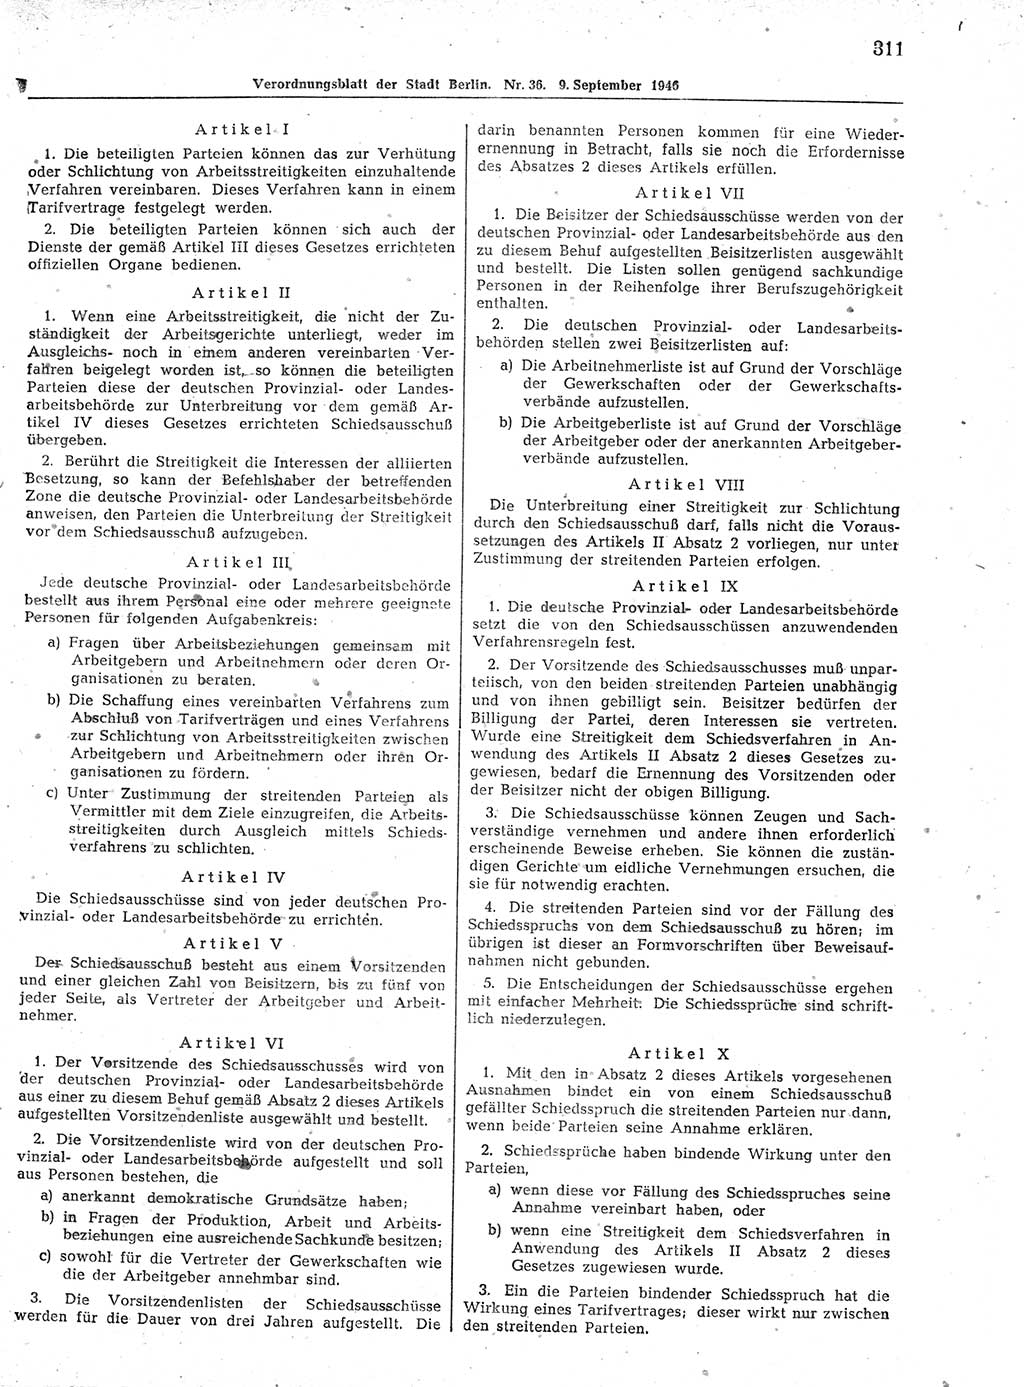 Verordnungsblatt (VOBl.) der Stadt Berlin, für Groß-Berlin 1946, Seite 311 (VOBl. Bln. 1946, S. 311)